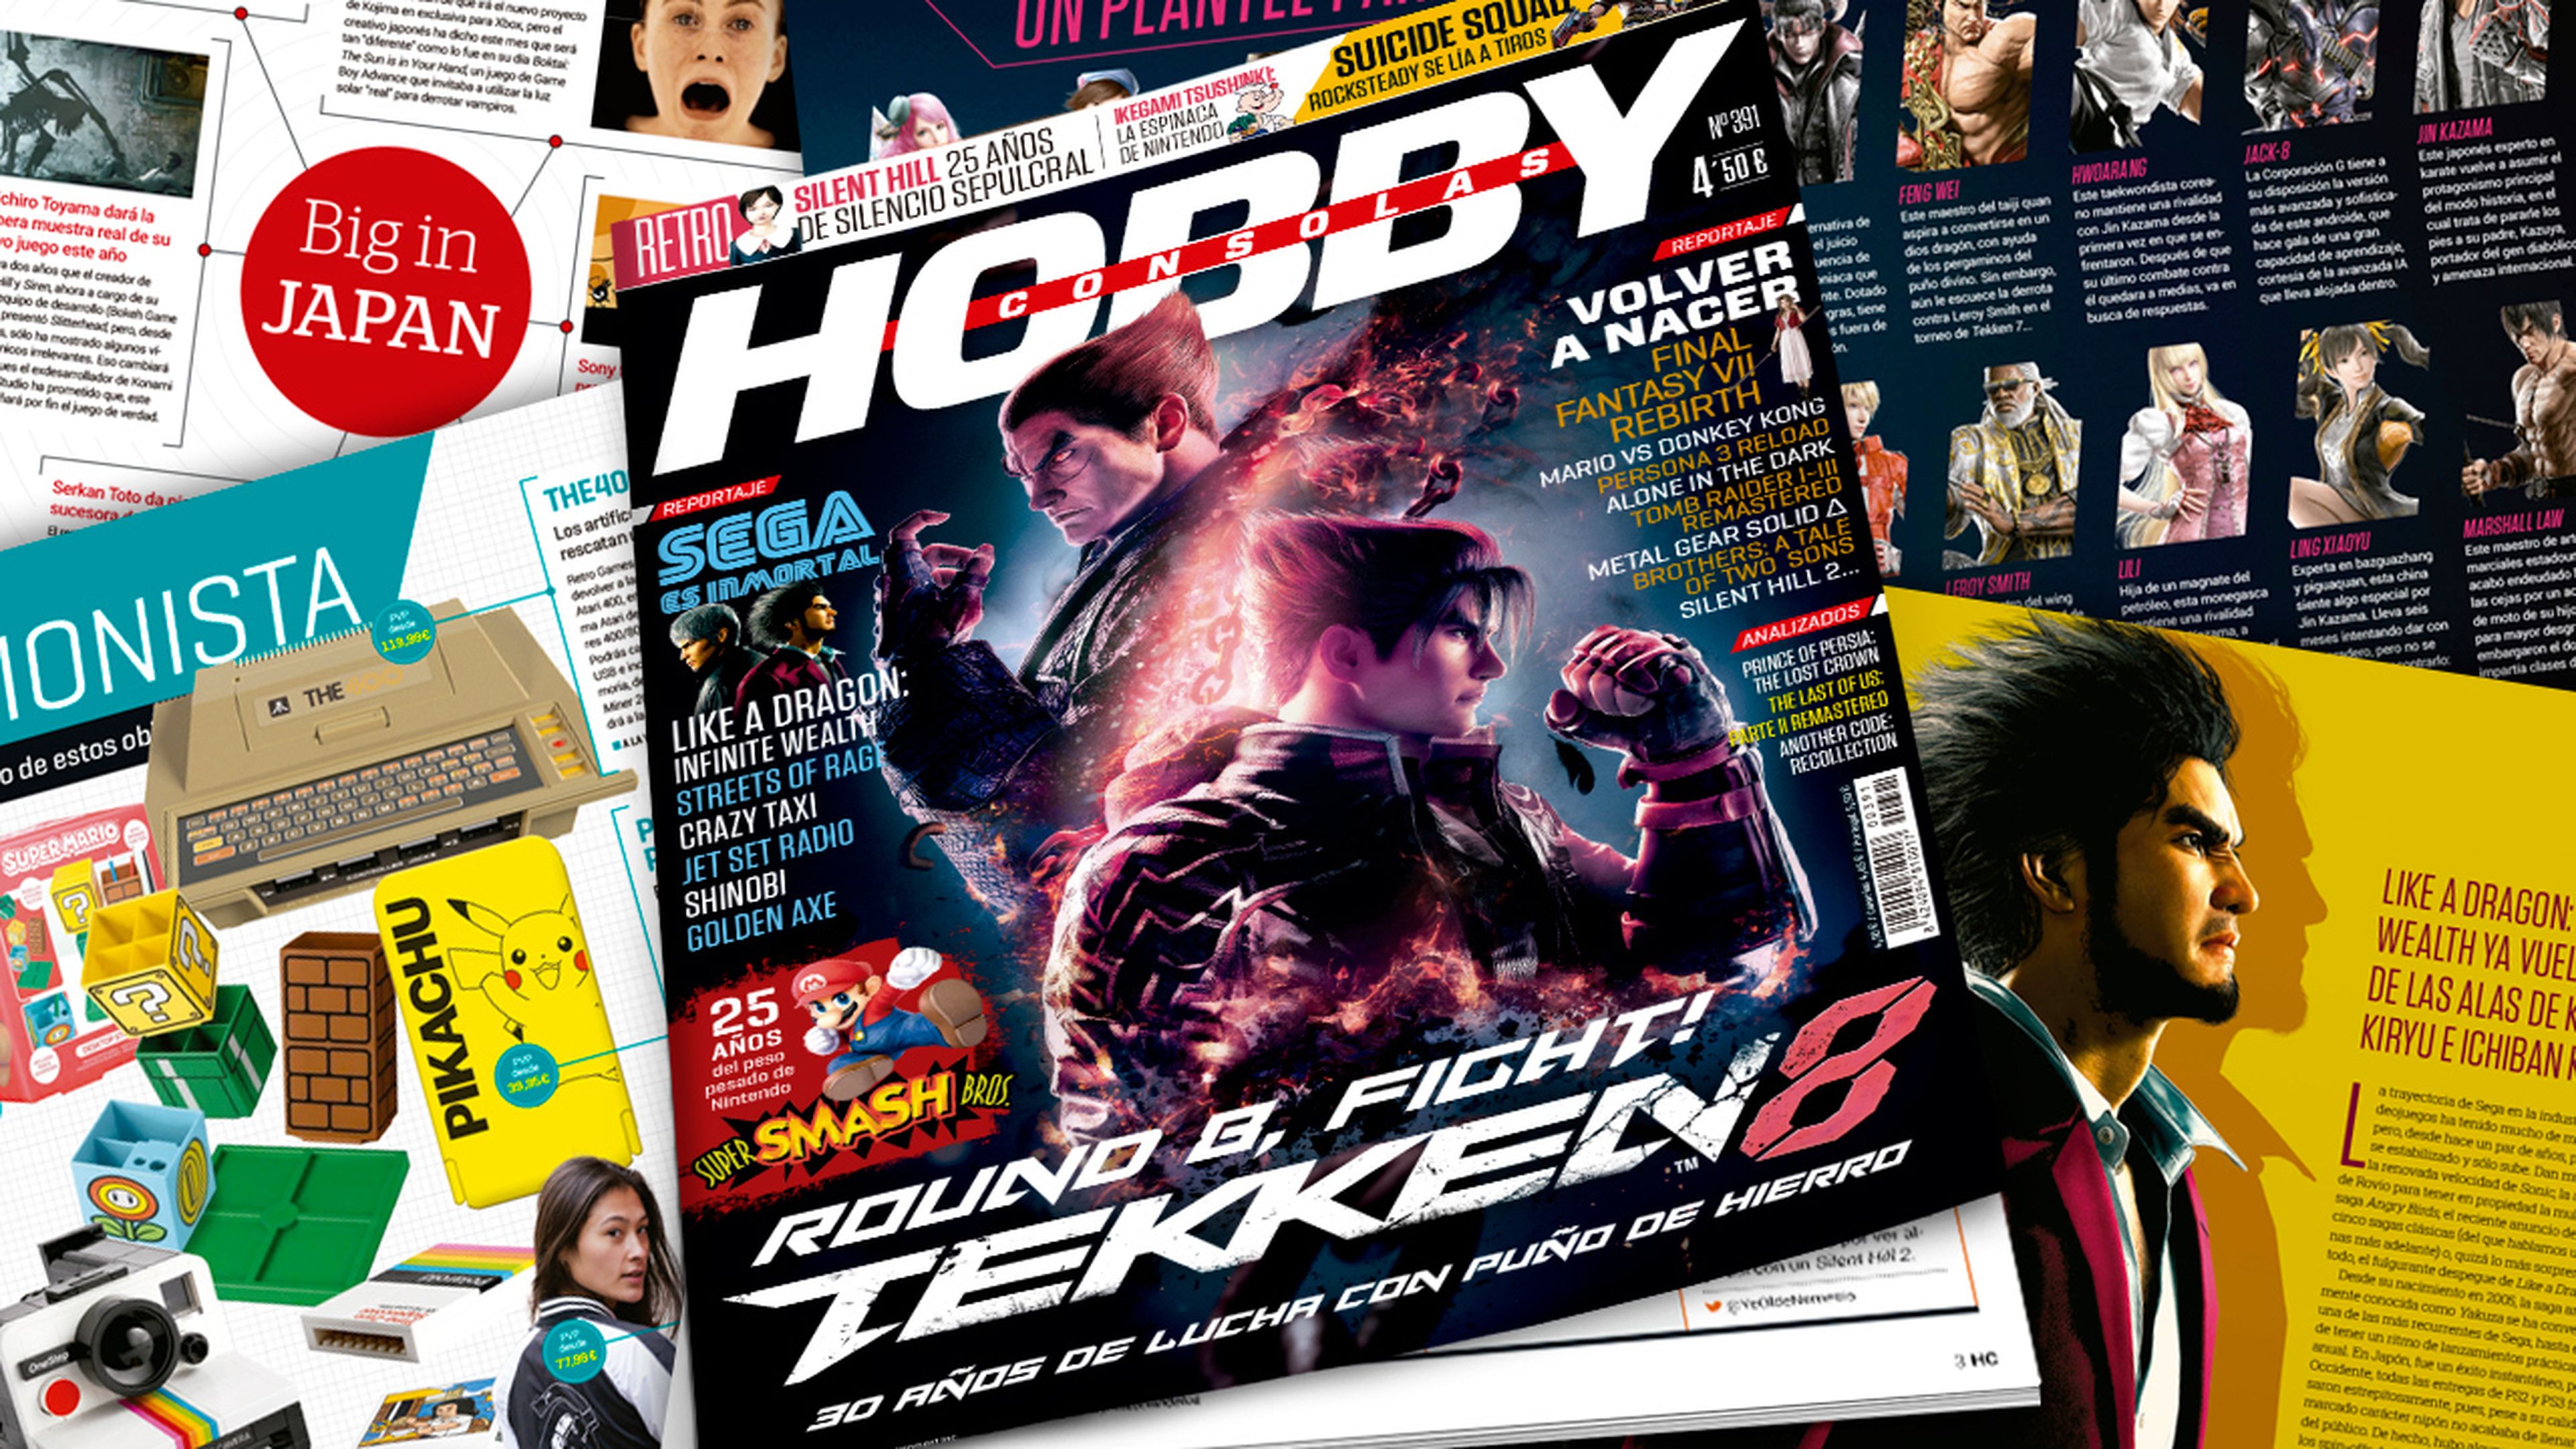 Hobby Consolas 391, a la venta con Tekken 8 en portada